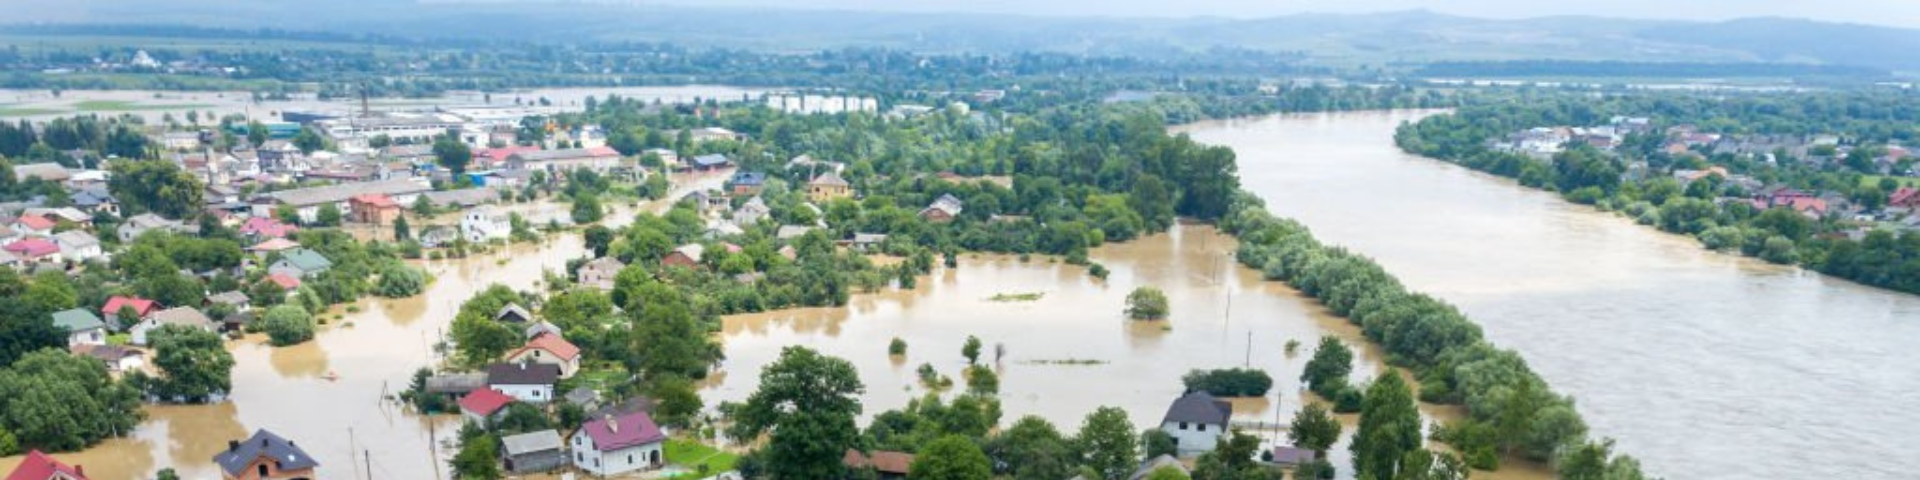 Immagine di terreni alluvionati